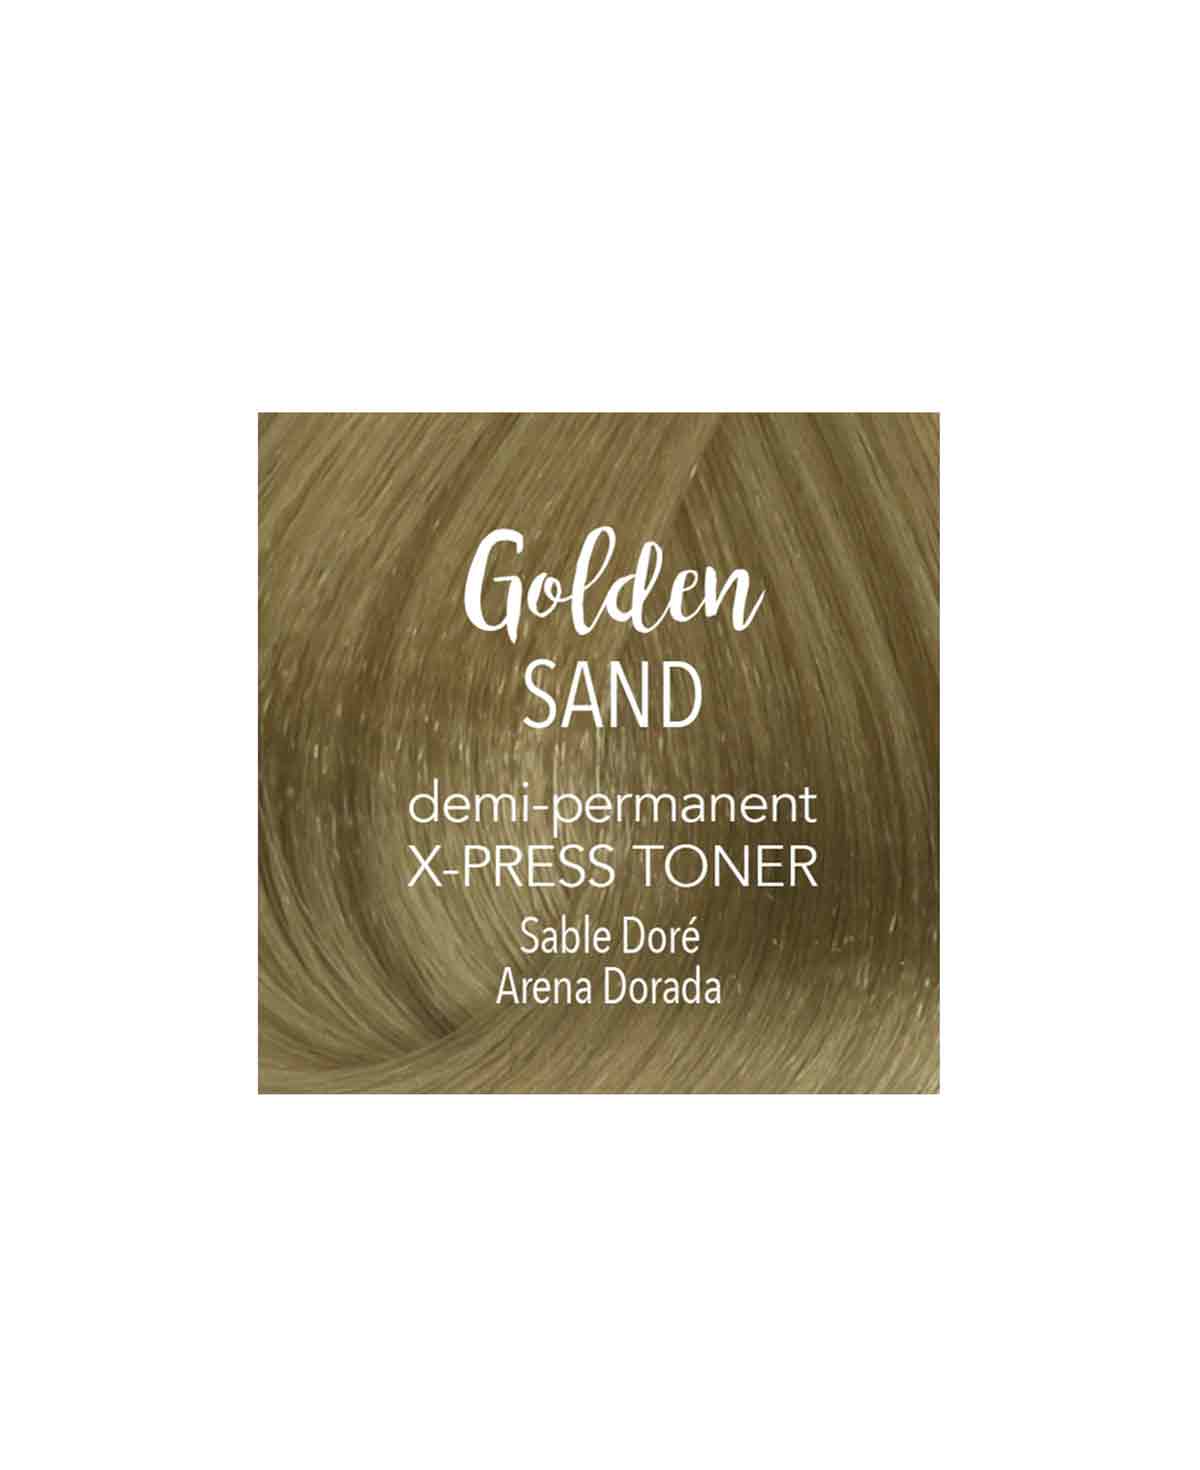 Mydentity - X-PRESS Toner Golden Sand